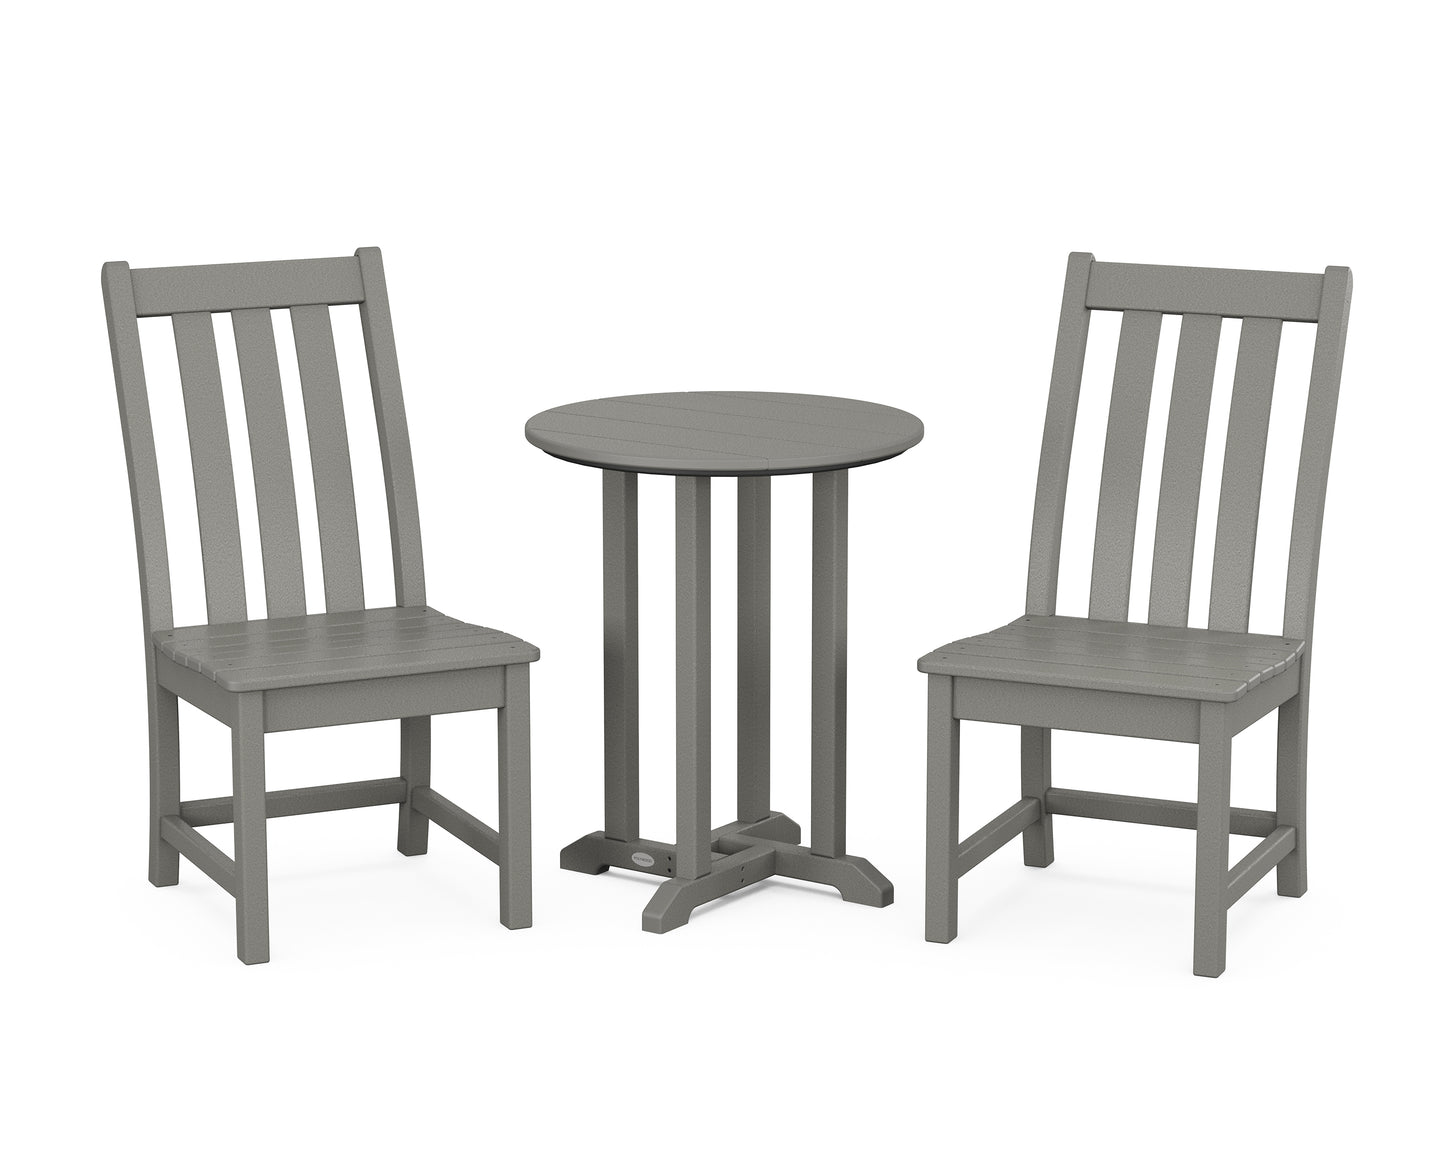 Vineyard Side Chair 3-Piece Round Dining Set